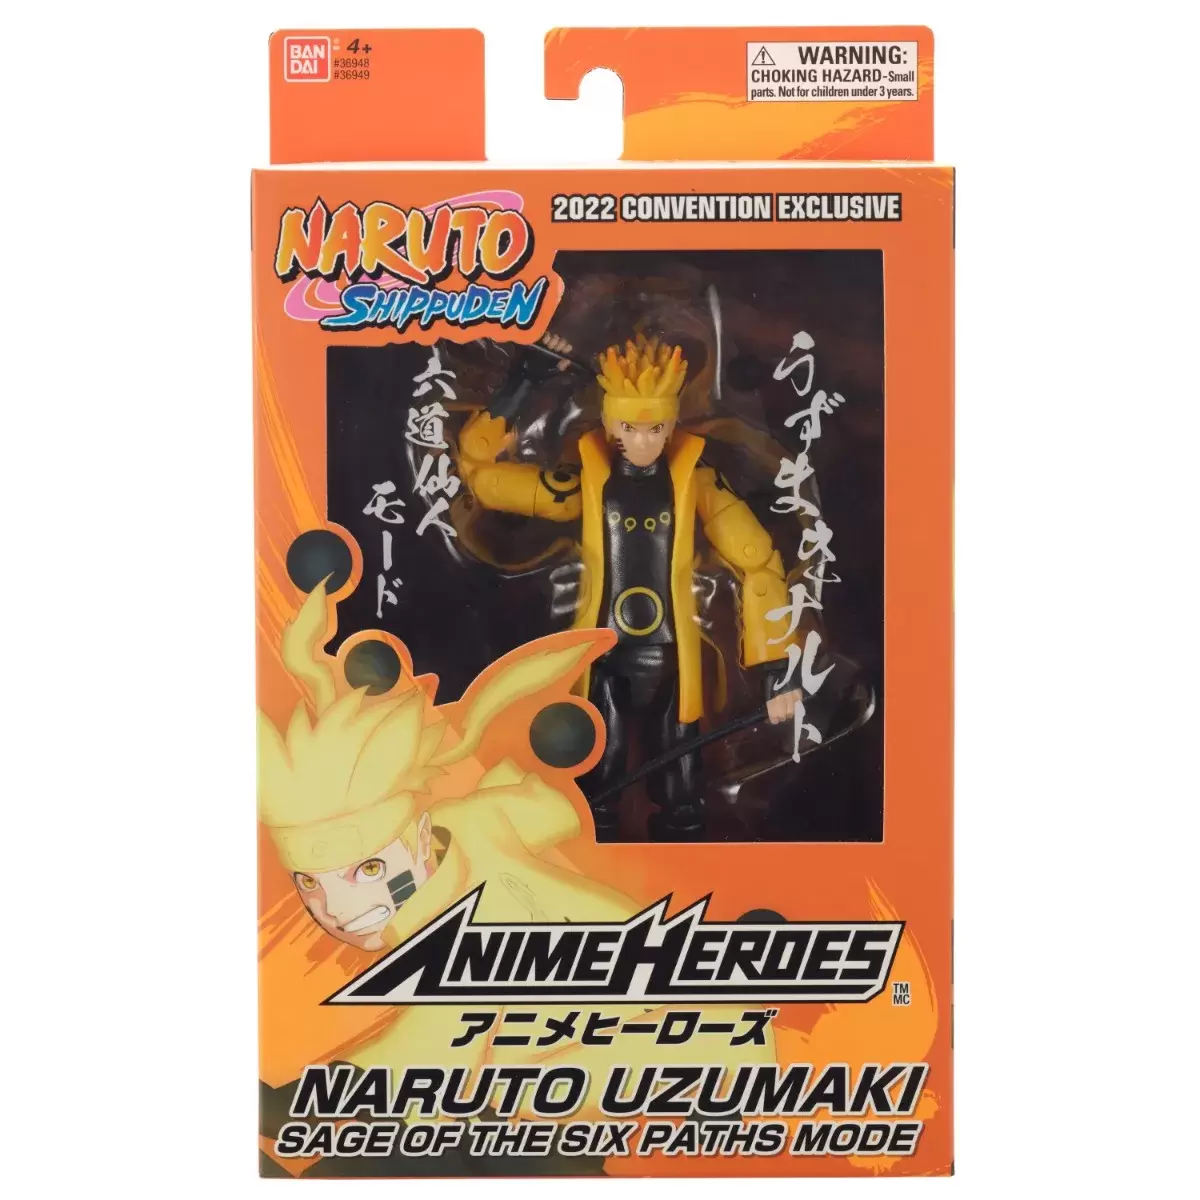 Anime Heroes - Bandai - Naruto Shippuden - Uzumaki Naruto 2022 Convention Exclusive